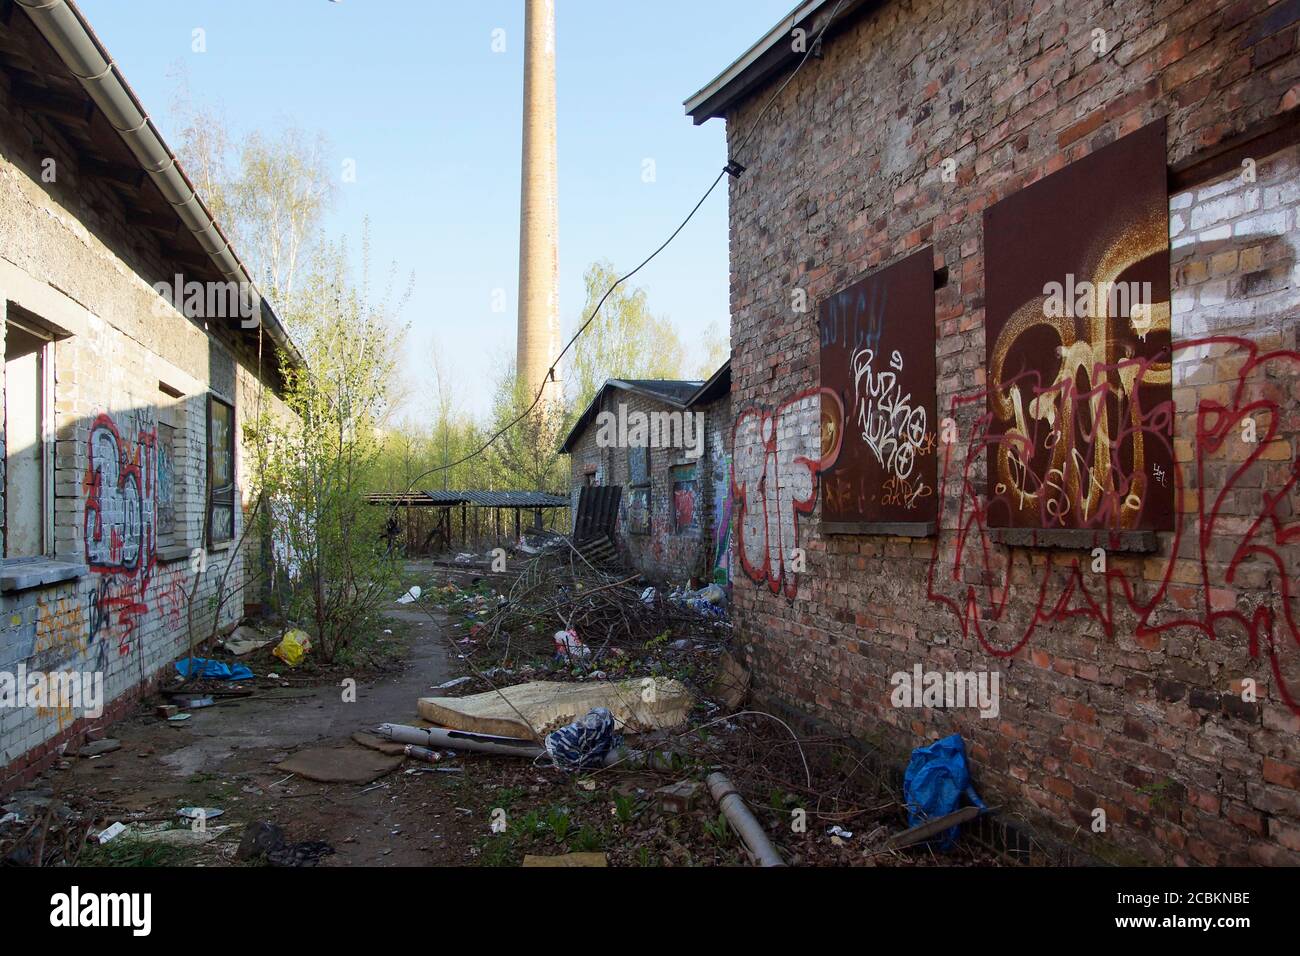 Verlassene Gebäude mit Müll und Graffiti auf einem Bahngelände der Bahn a Berlino Pankow / Urbex Foto Stock